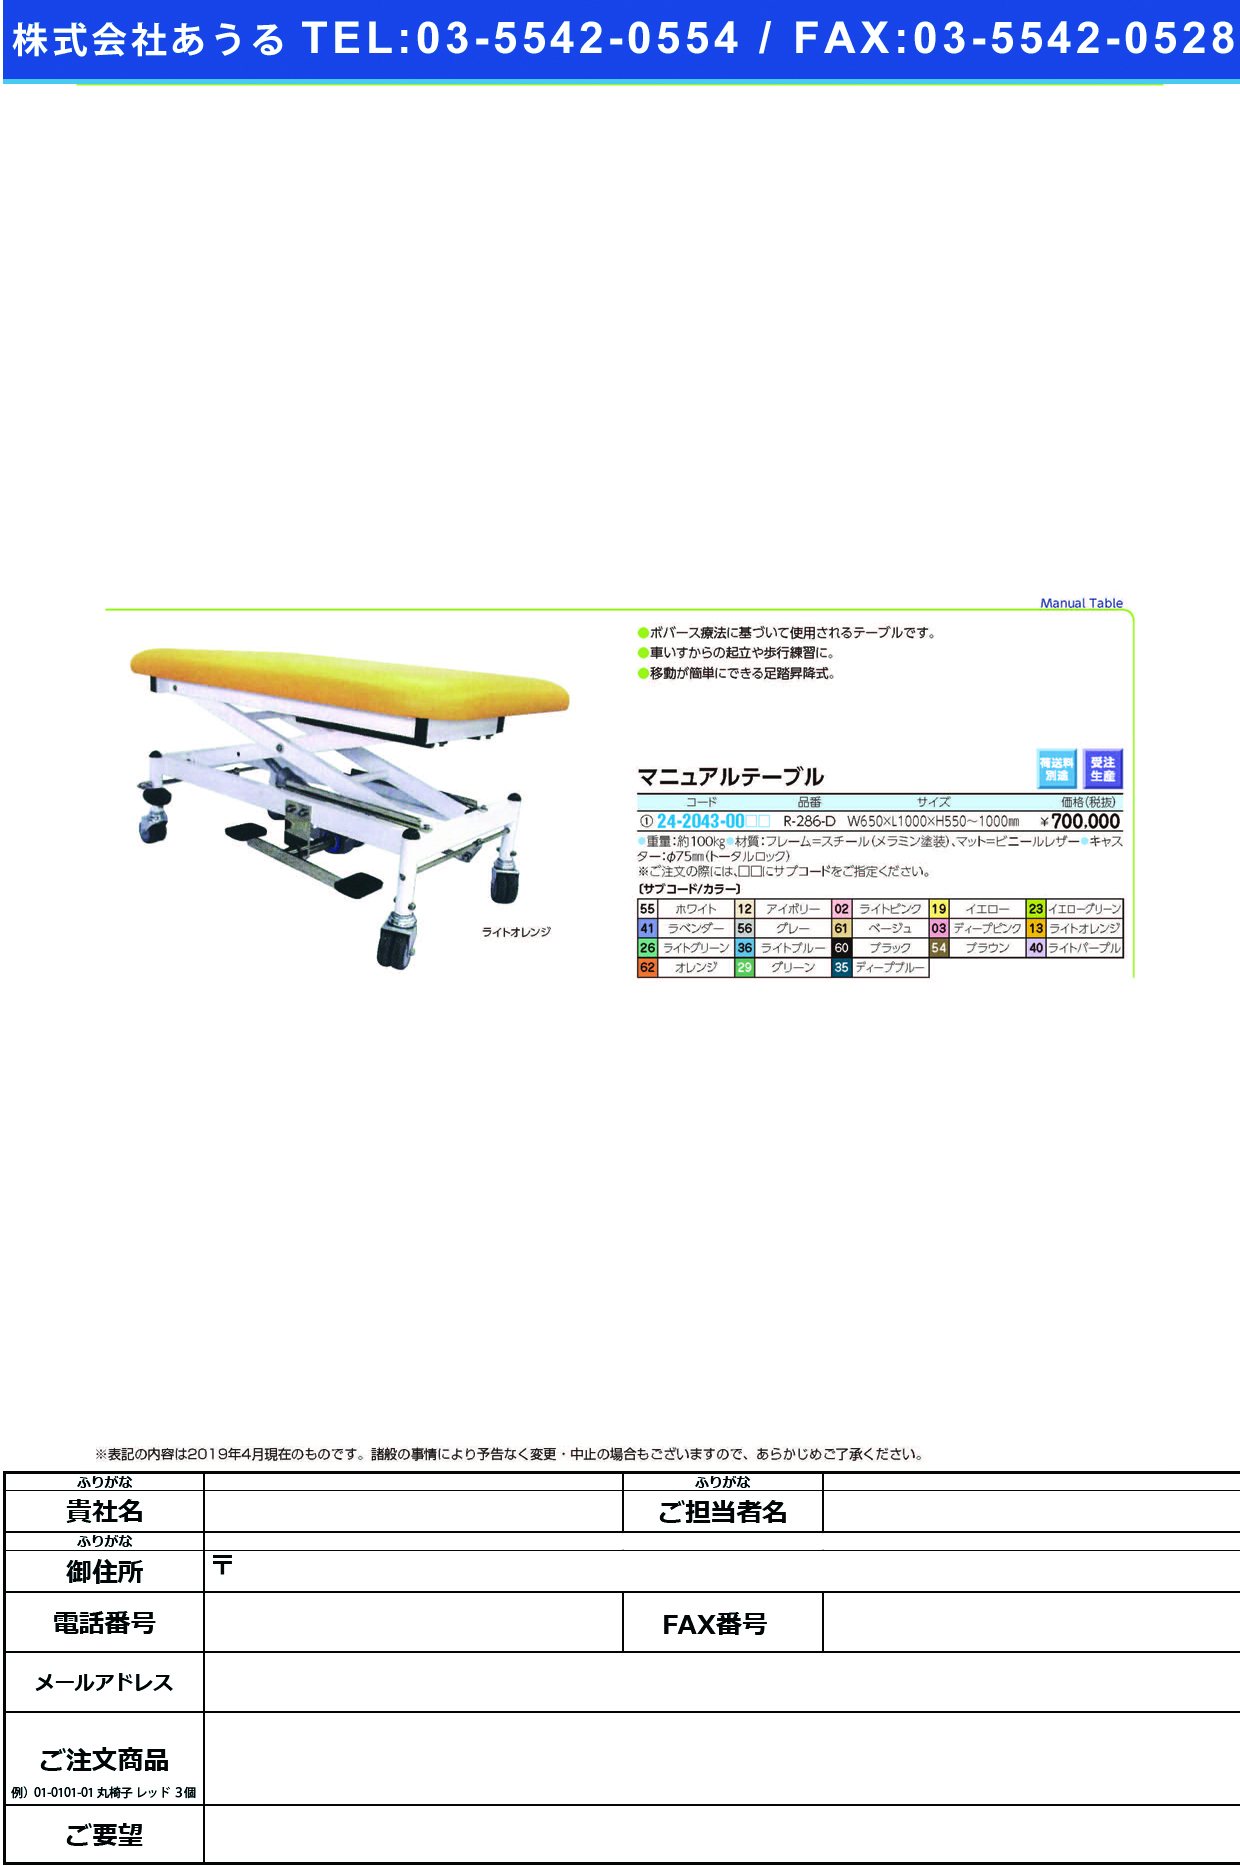 (24-2043-00)マニュアルテーブル R-286-D ﾏﾆｭｱﾙﾃｰﾌﾞﾙ ライトオレンジ【1台単位】【2019年カタログ商品】